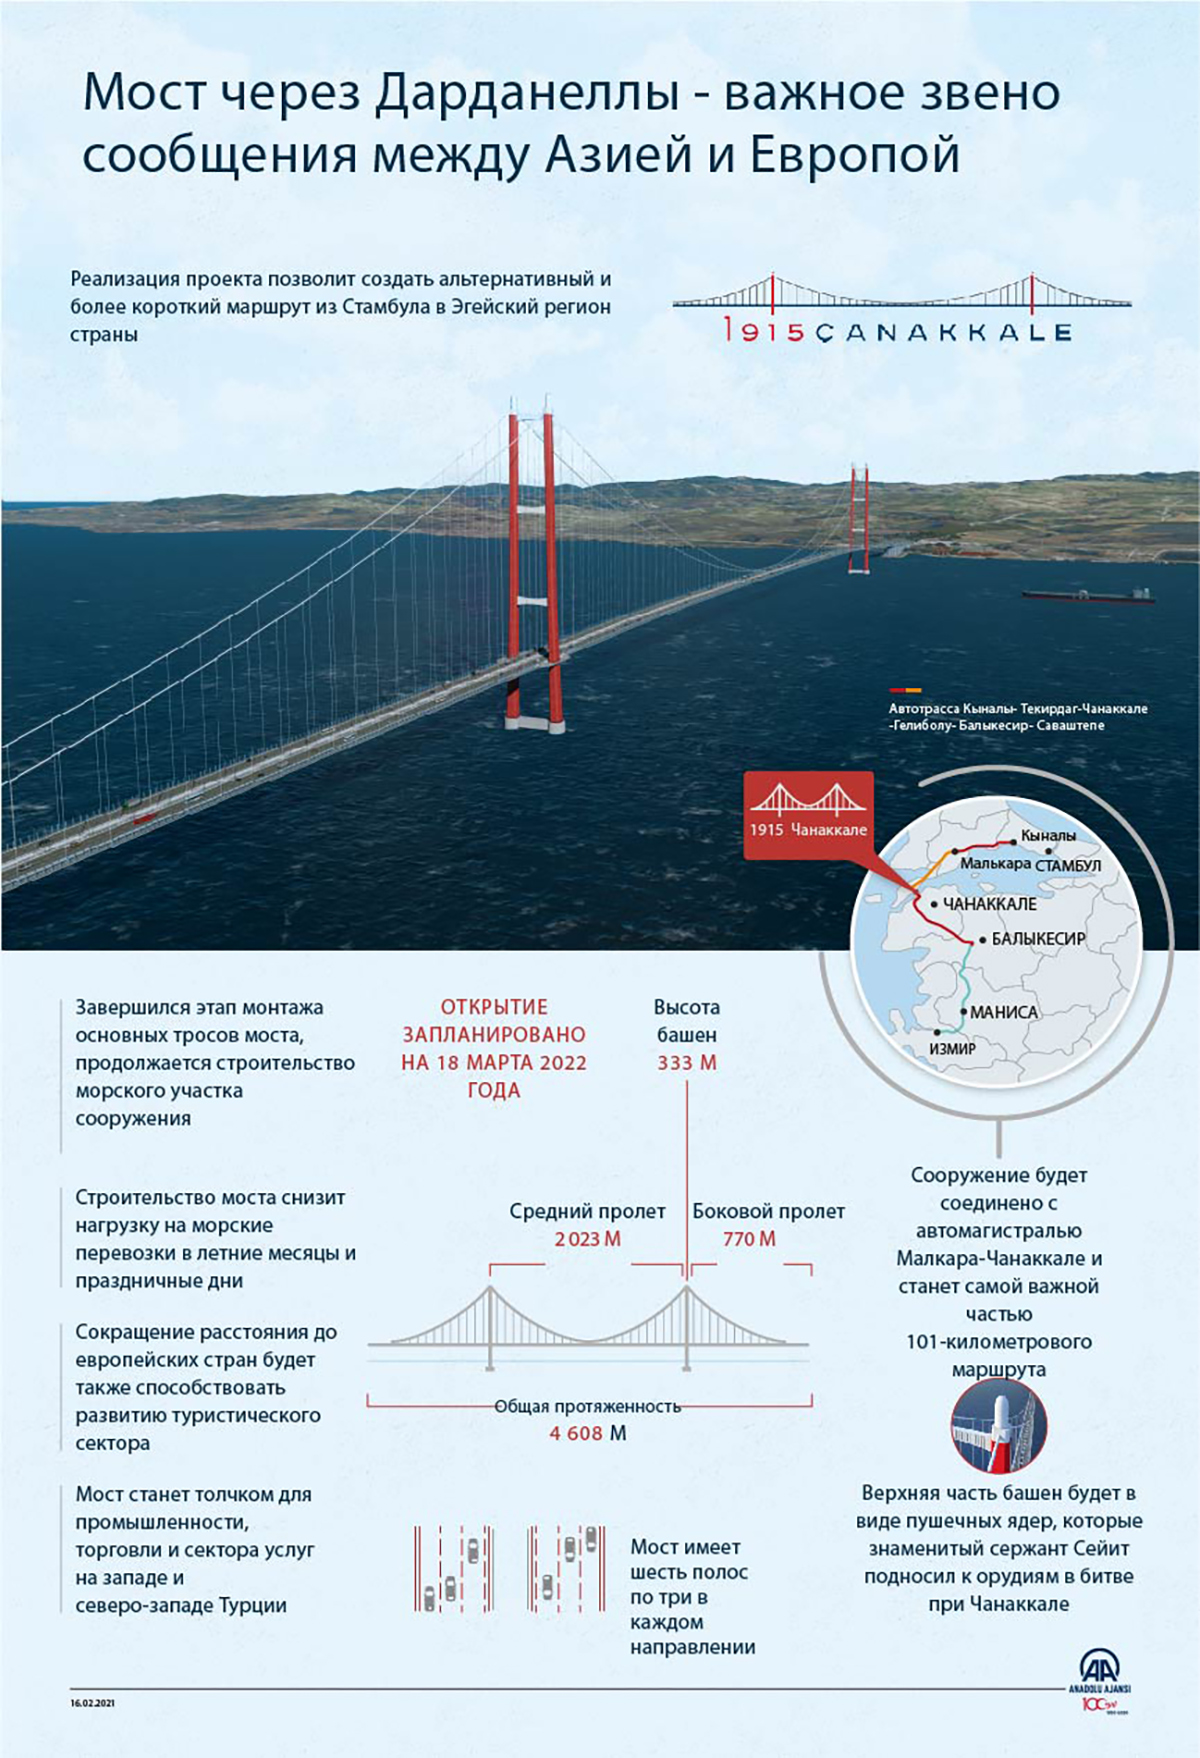 Мост через Дарданеллы - важное звено сообщения между Азией и Европой